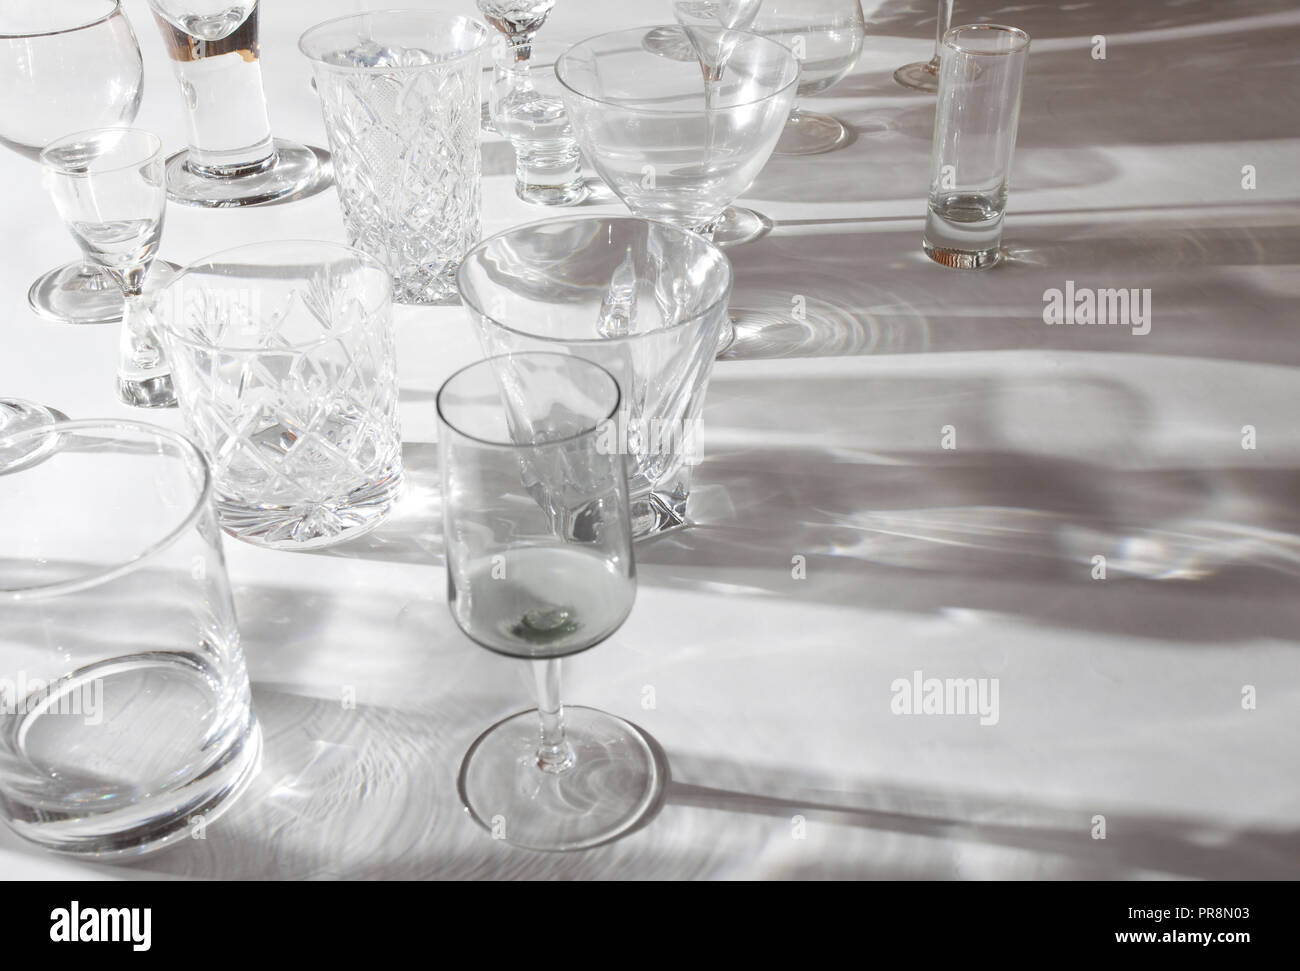 Une variété de verres à boire sur la table Banque D'Images